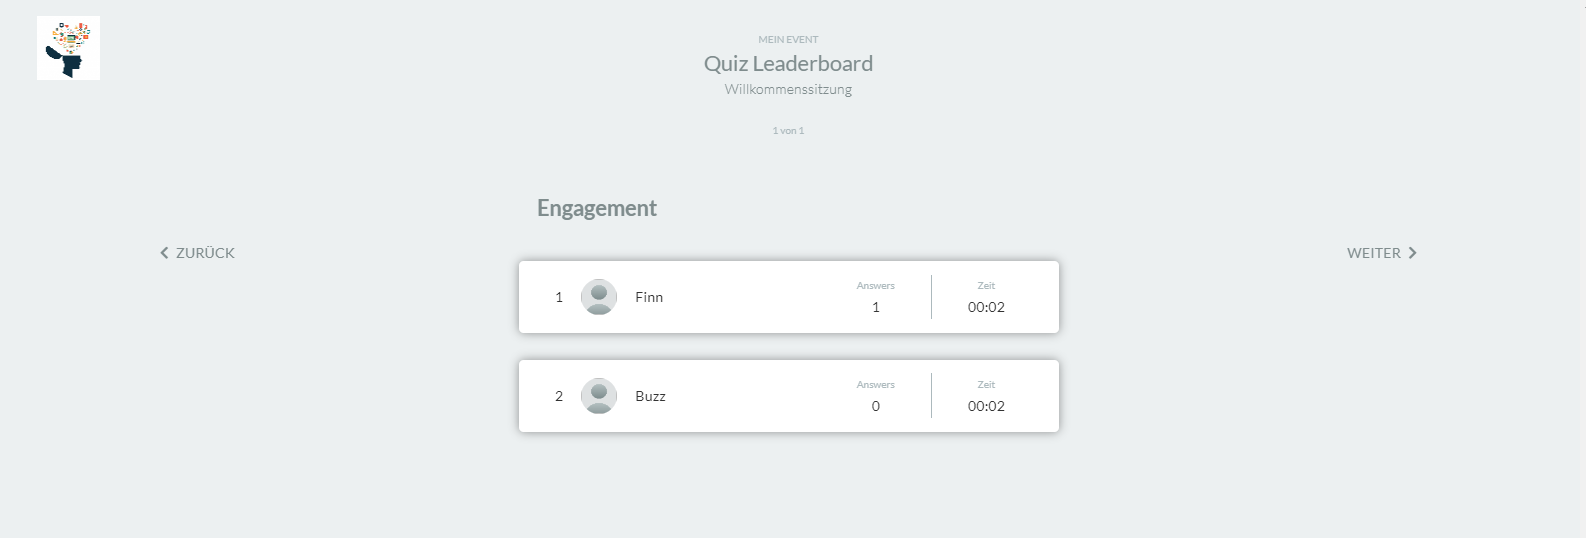 quiz leaderboard